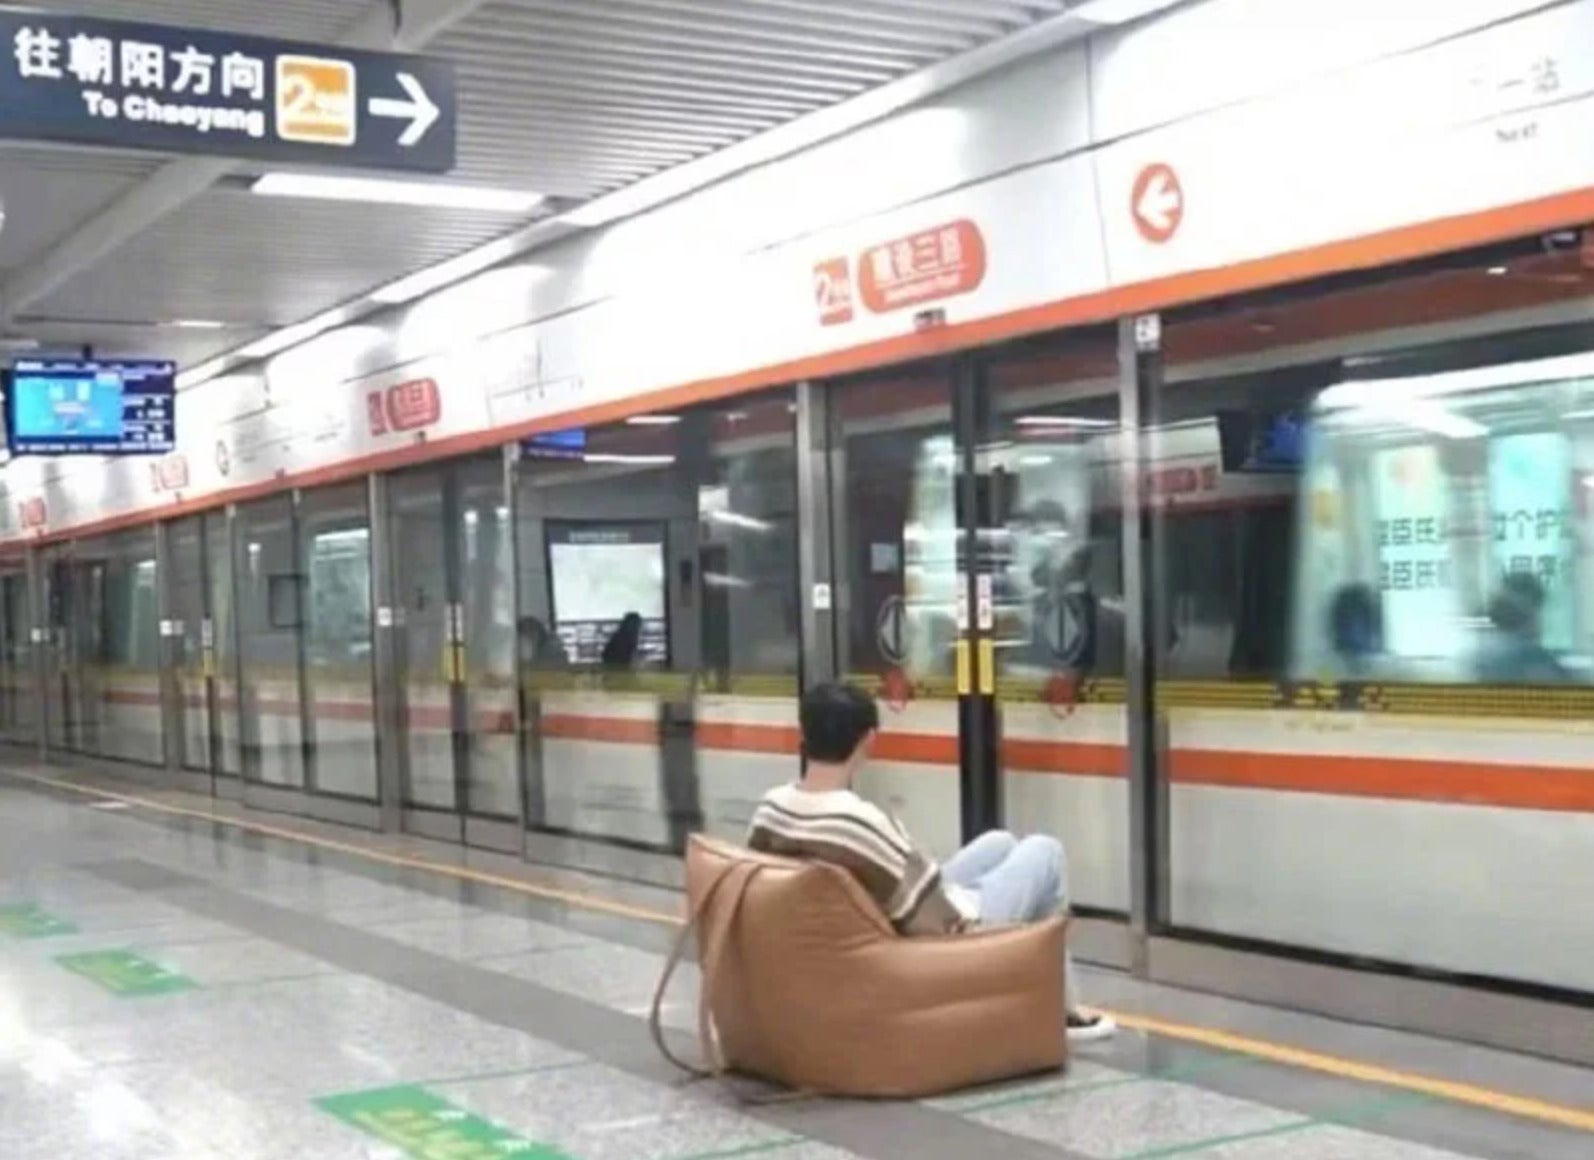 หนุ่มจีนพกโซฟาขึ้นรถไฟฟ้าใต้ดิน